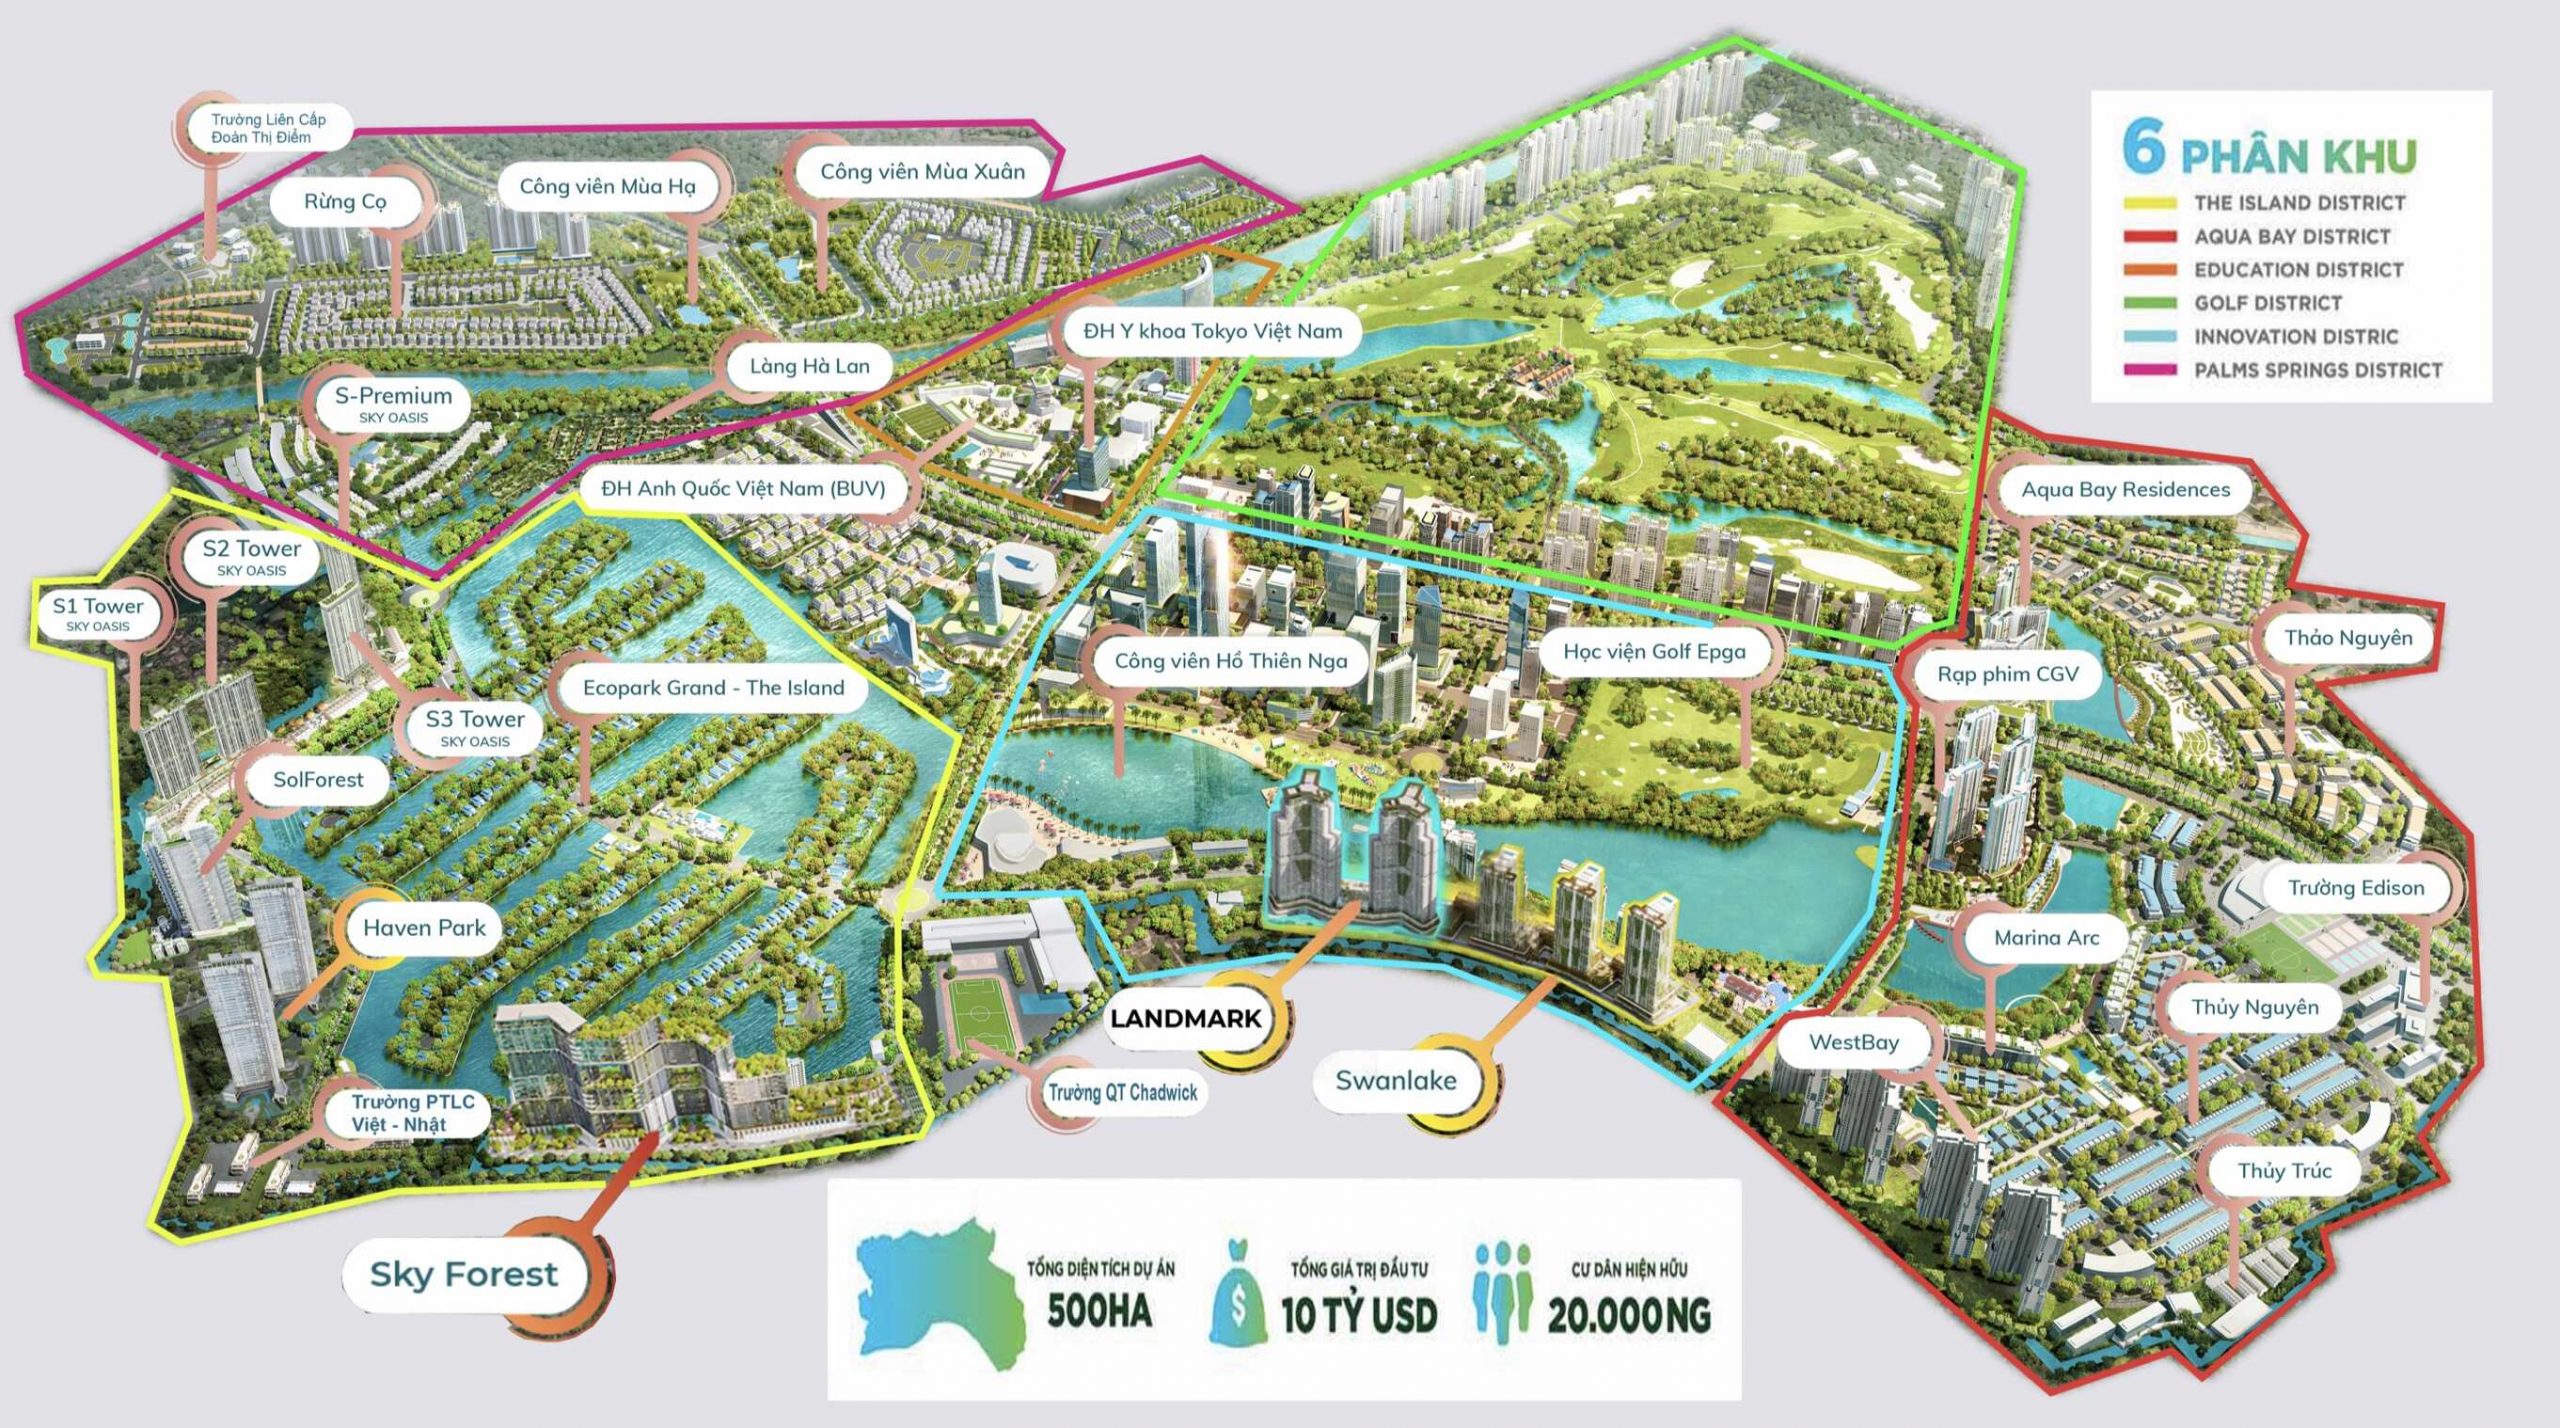 Quy hoạch chi tiết khu đô thị Ecopark